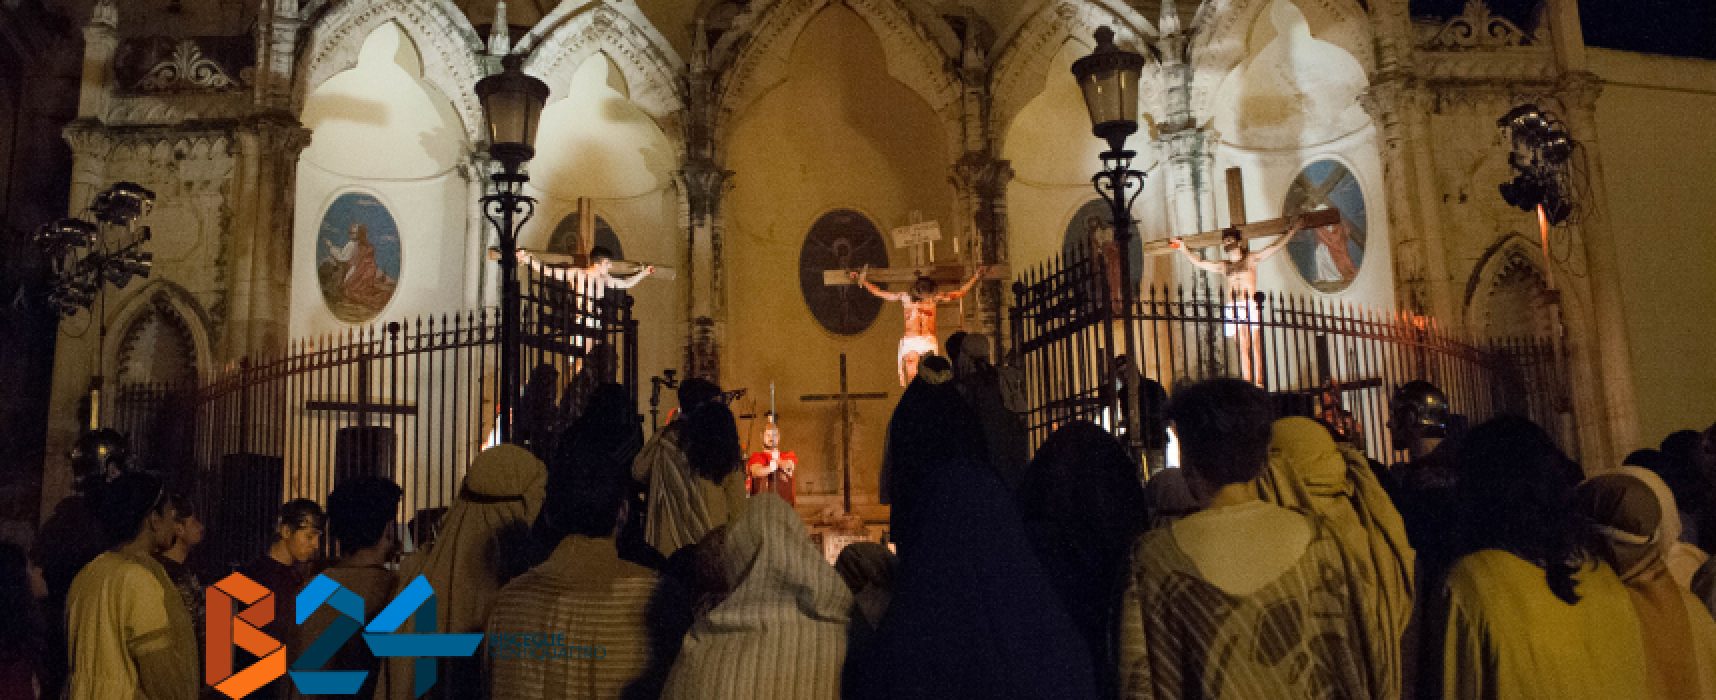 La “Passio Christi” ed i suoi momenti toccanti vissuti ieri sera nel centro di Bisceglie / GALLERY